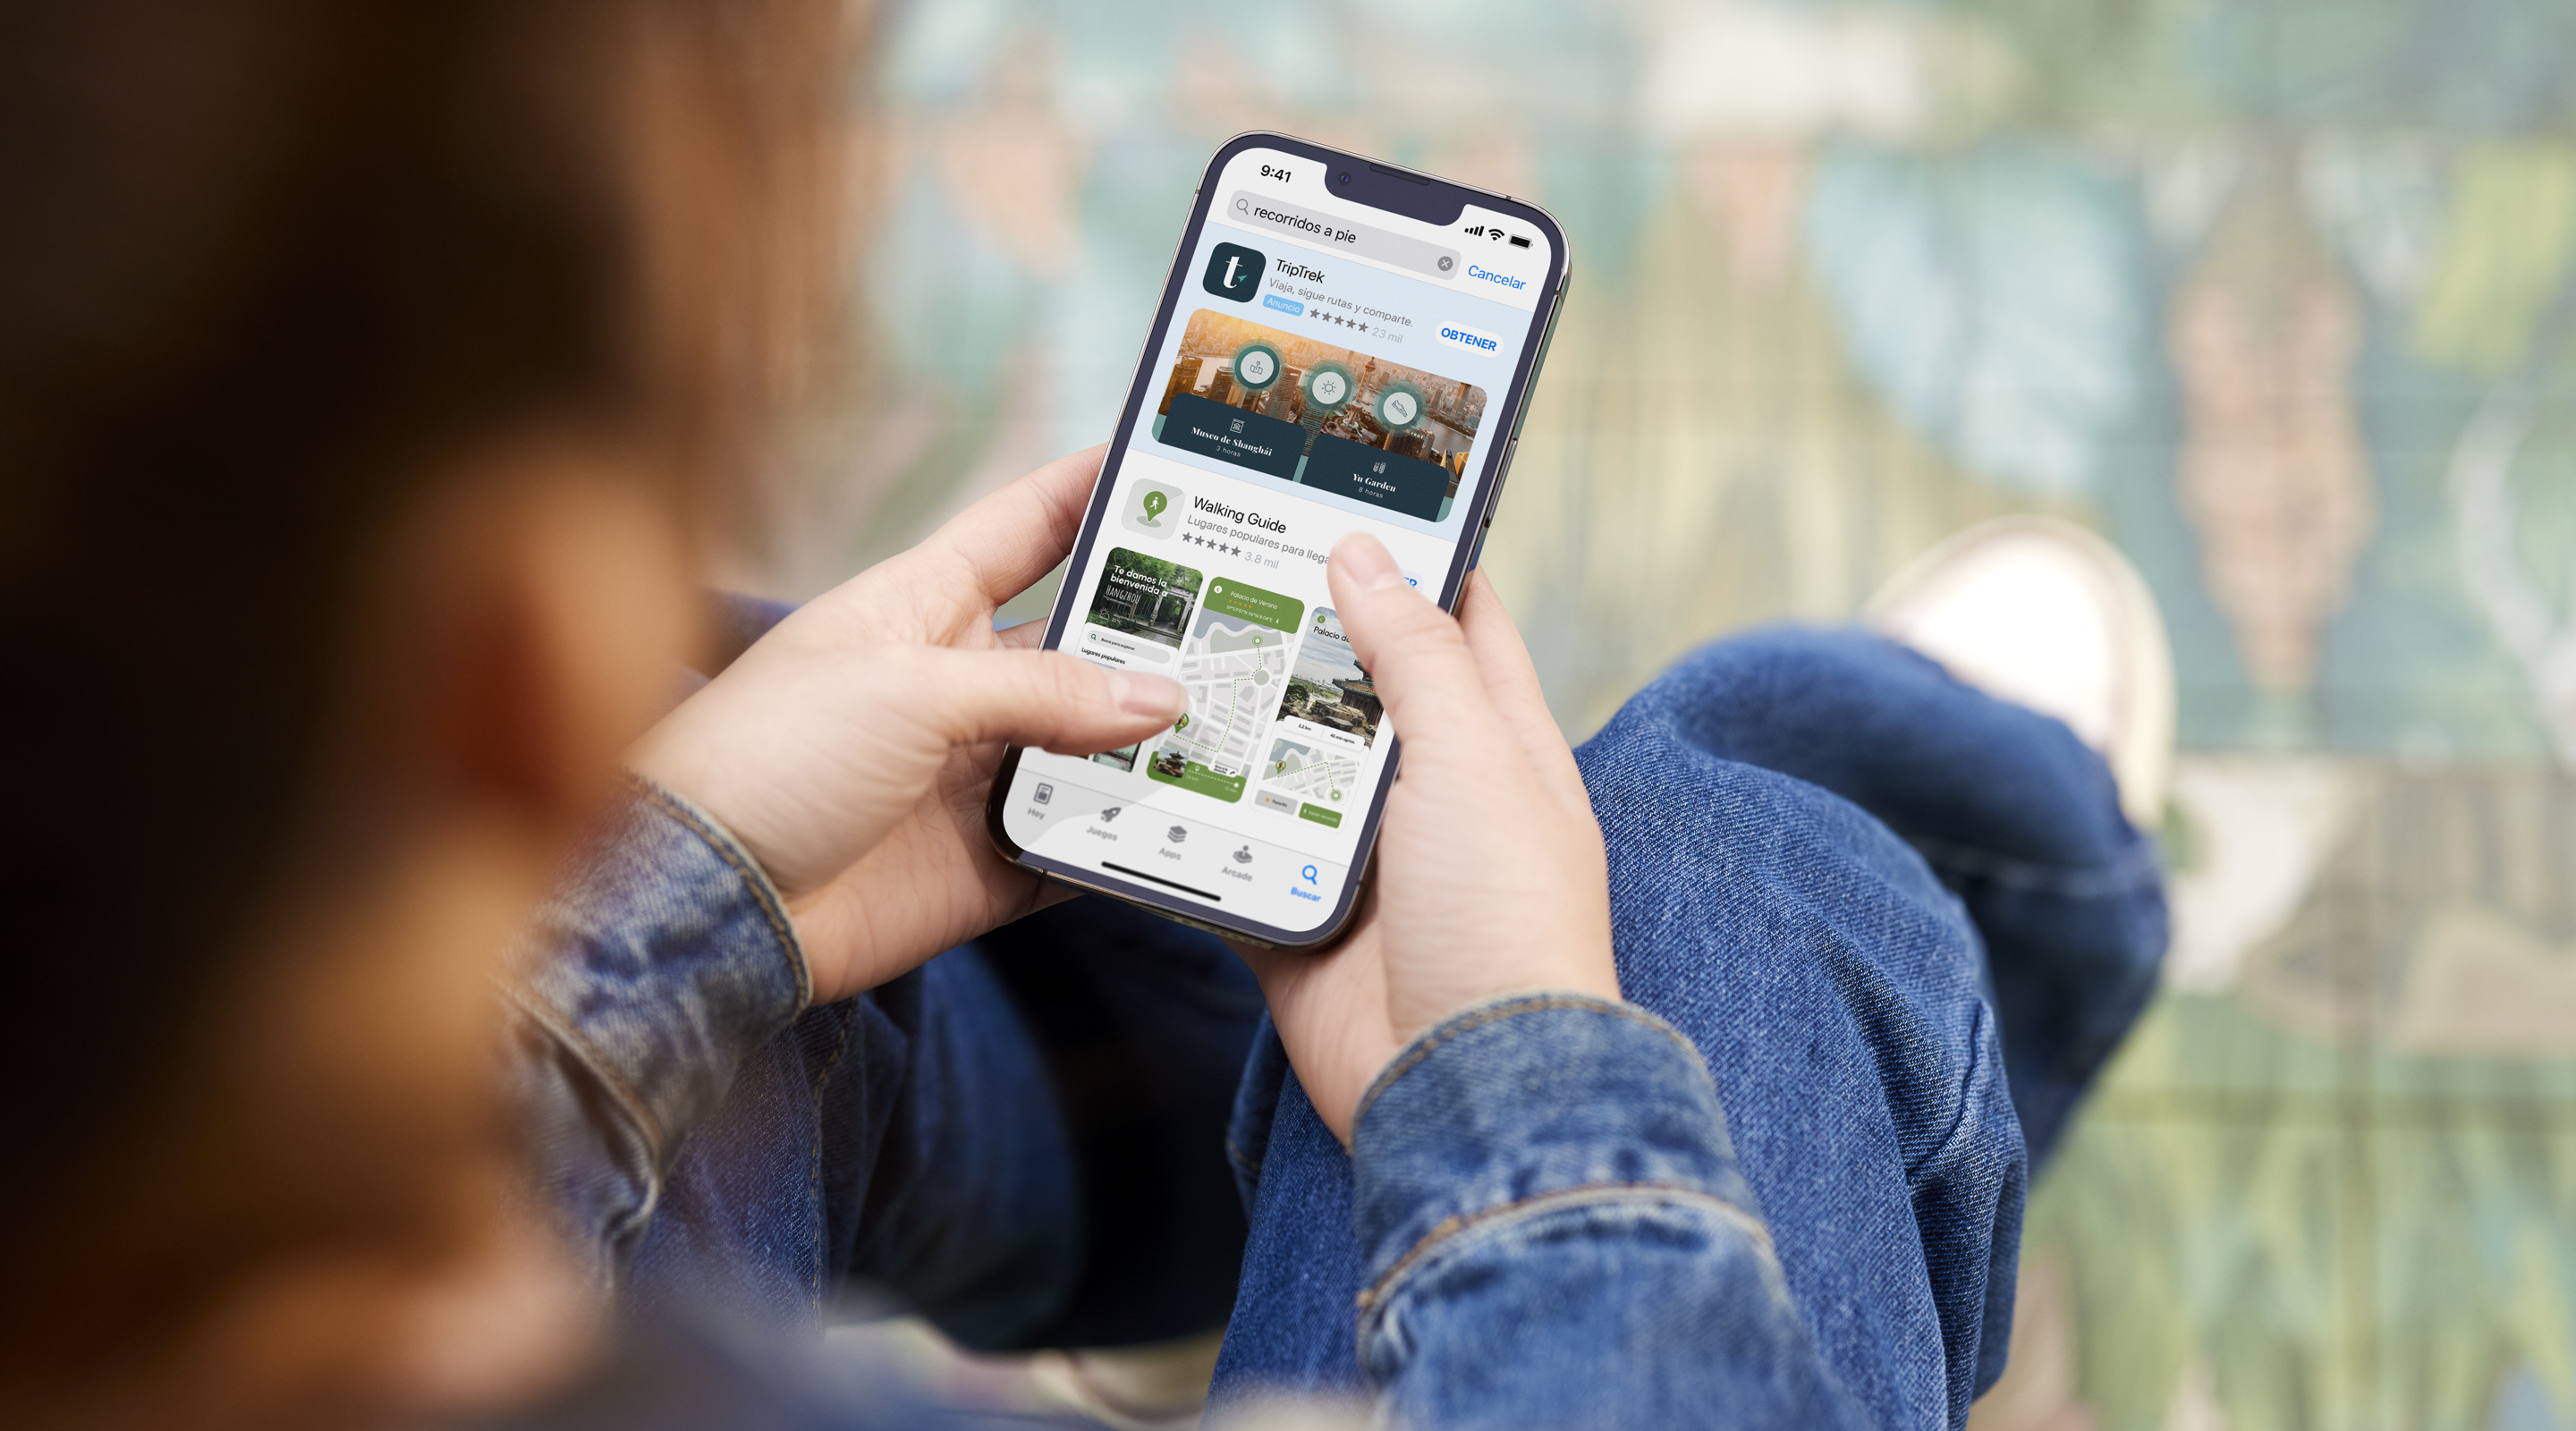 Dos manos que sostienen un iPhone. El App Store se abre en un anuncio de resultados de búsqueda de la app de ejemplo TripTrek con el término «recorridos a pie» introducido en el cuadro de búsqueda. 